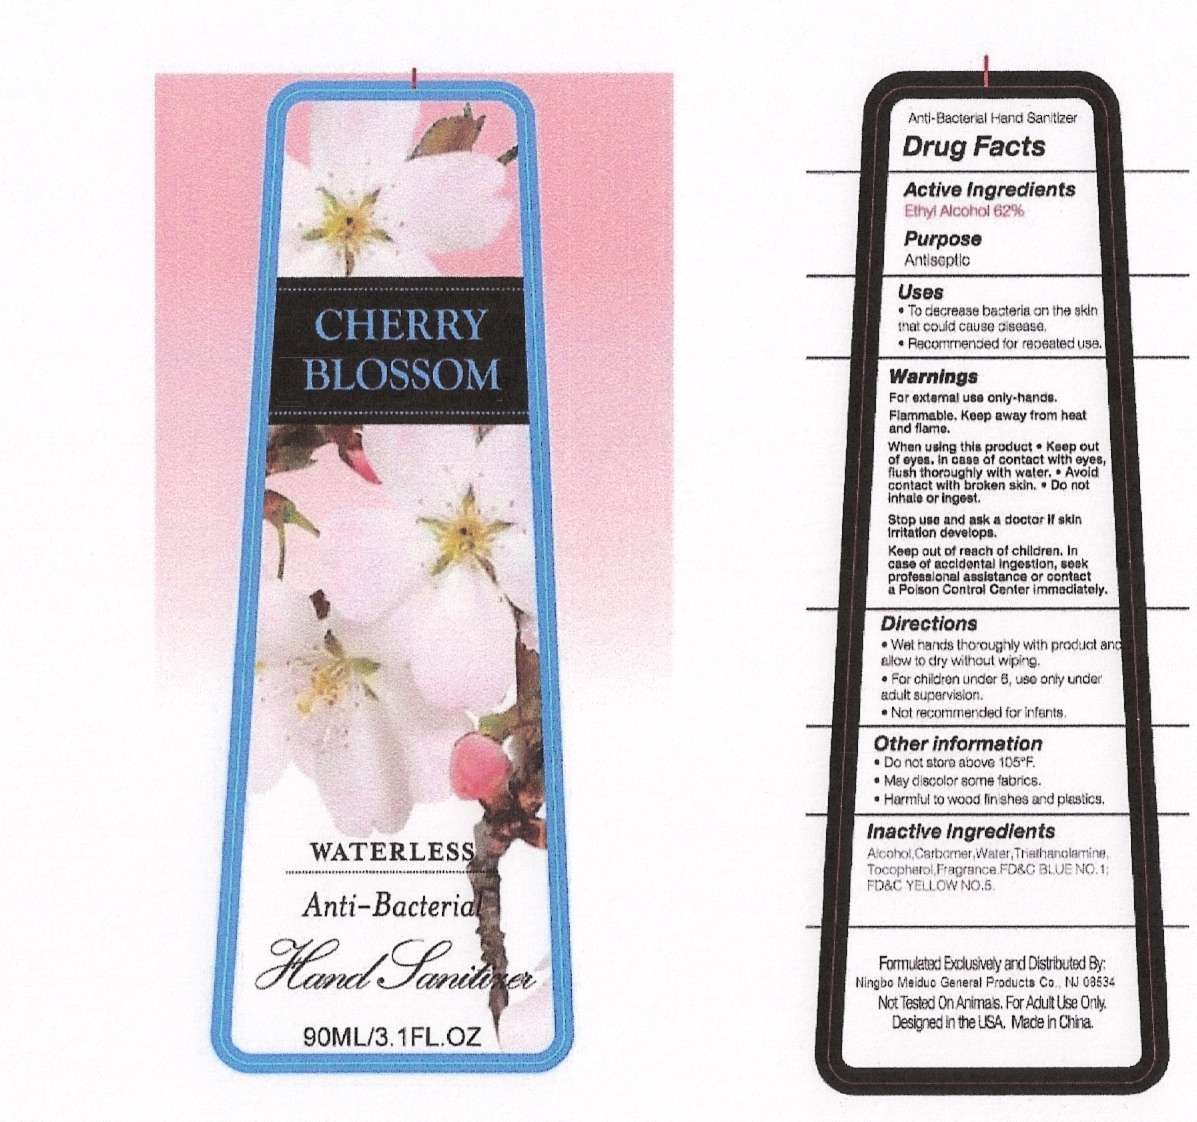 Cherry Blossom Waterless Anti-Antibateria Hand Sanitizer